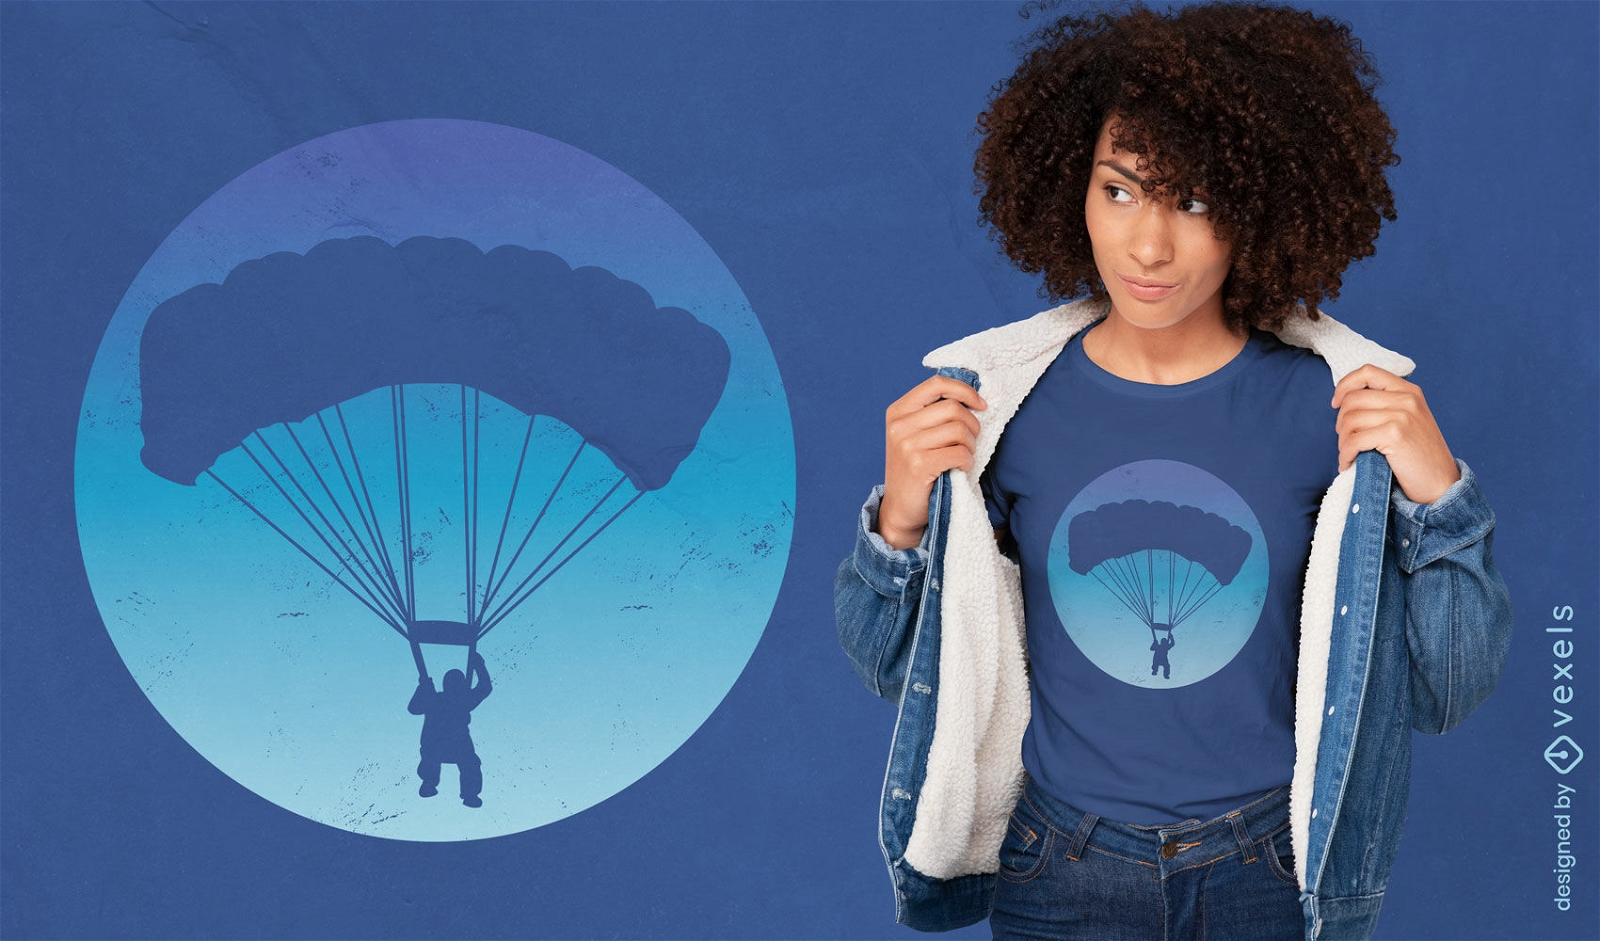 Diseño de camiseta de silueta de hobby de paracaidismo